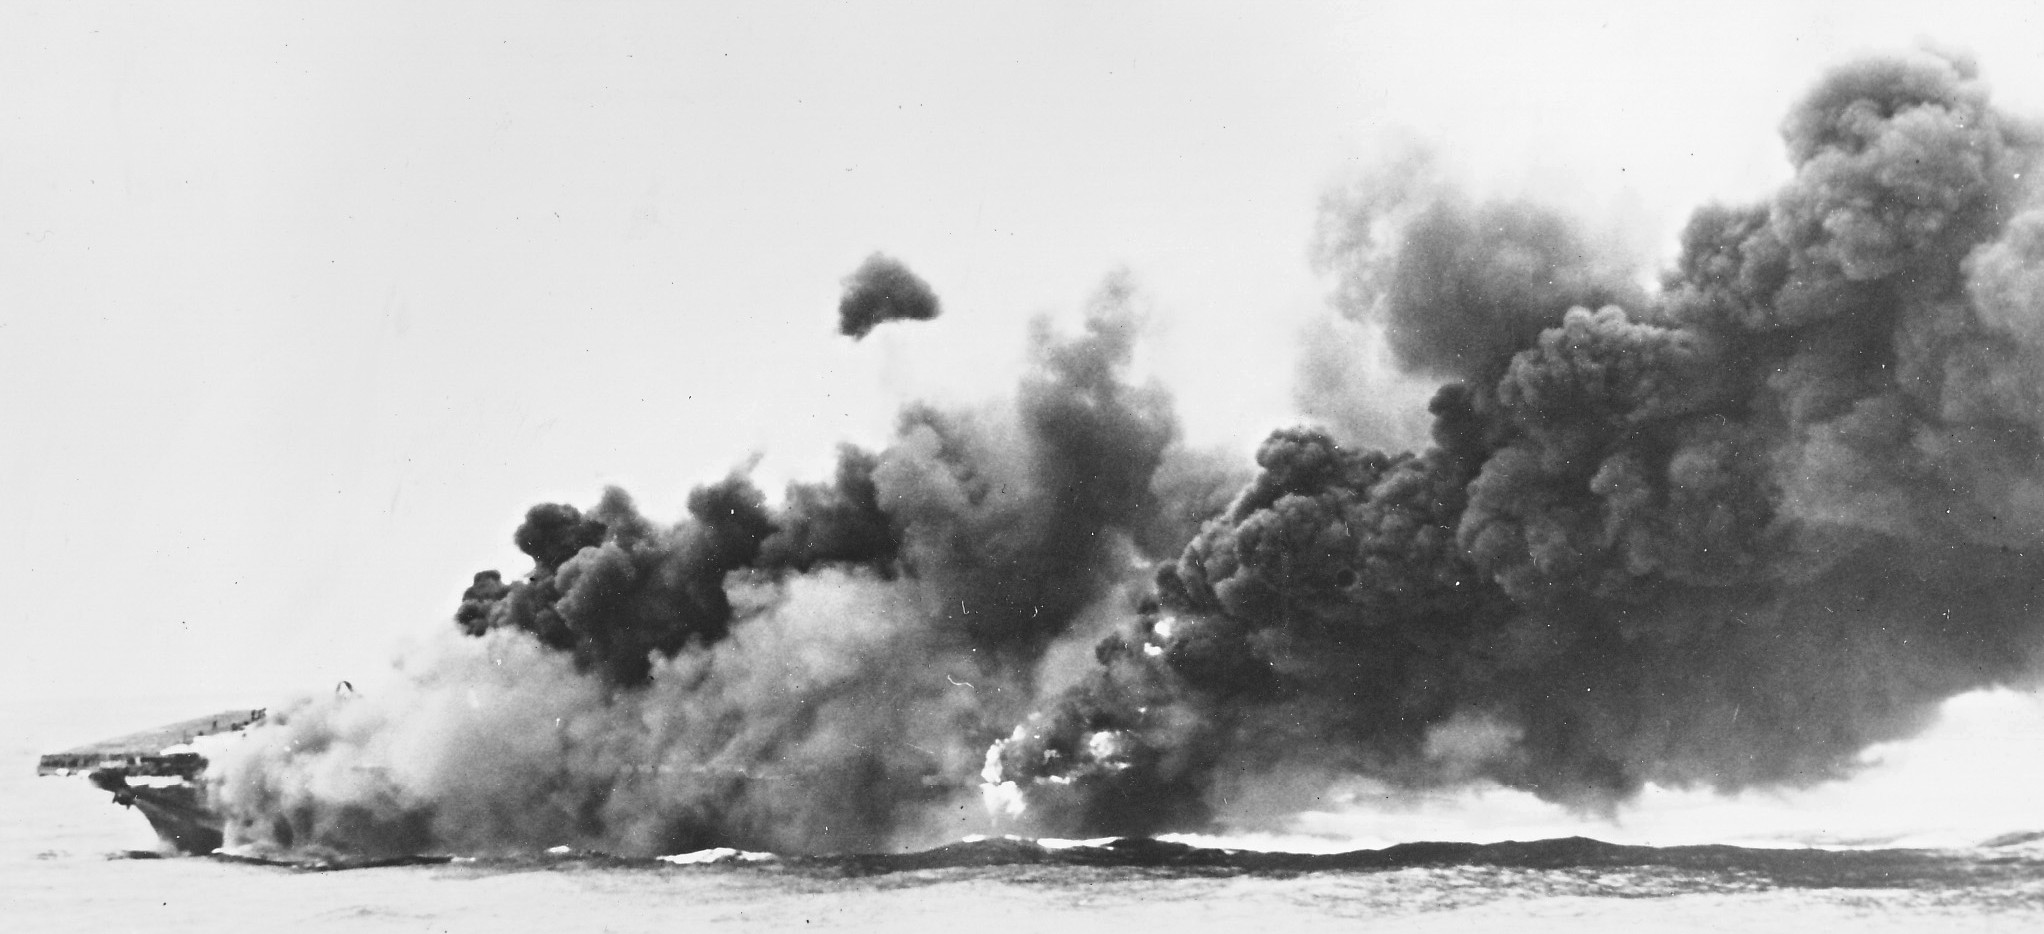 cva-19 uss hancock cv essex class aircraft carrier hit by kamikaze aircraft japan wwii 09